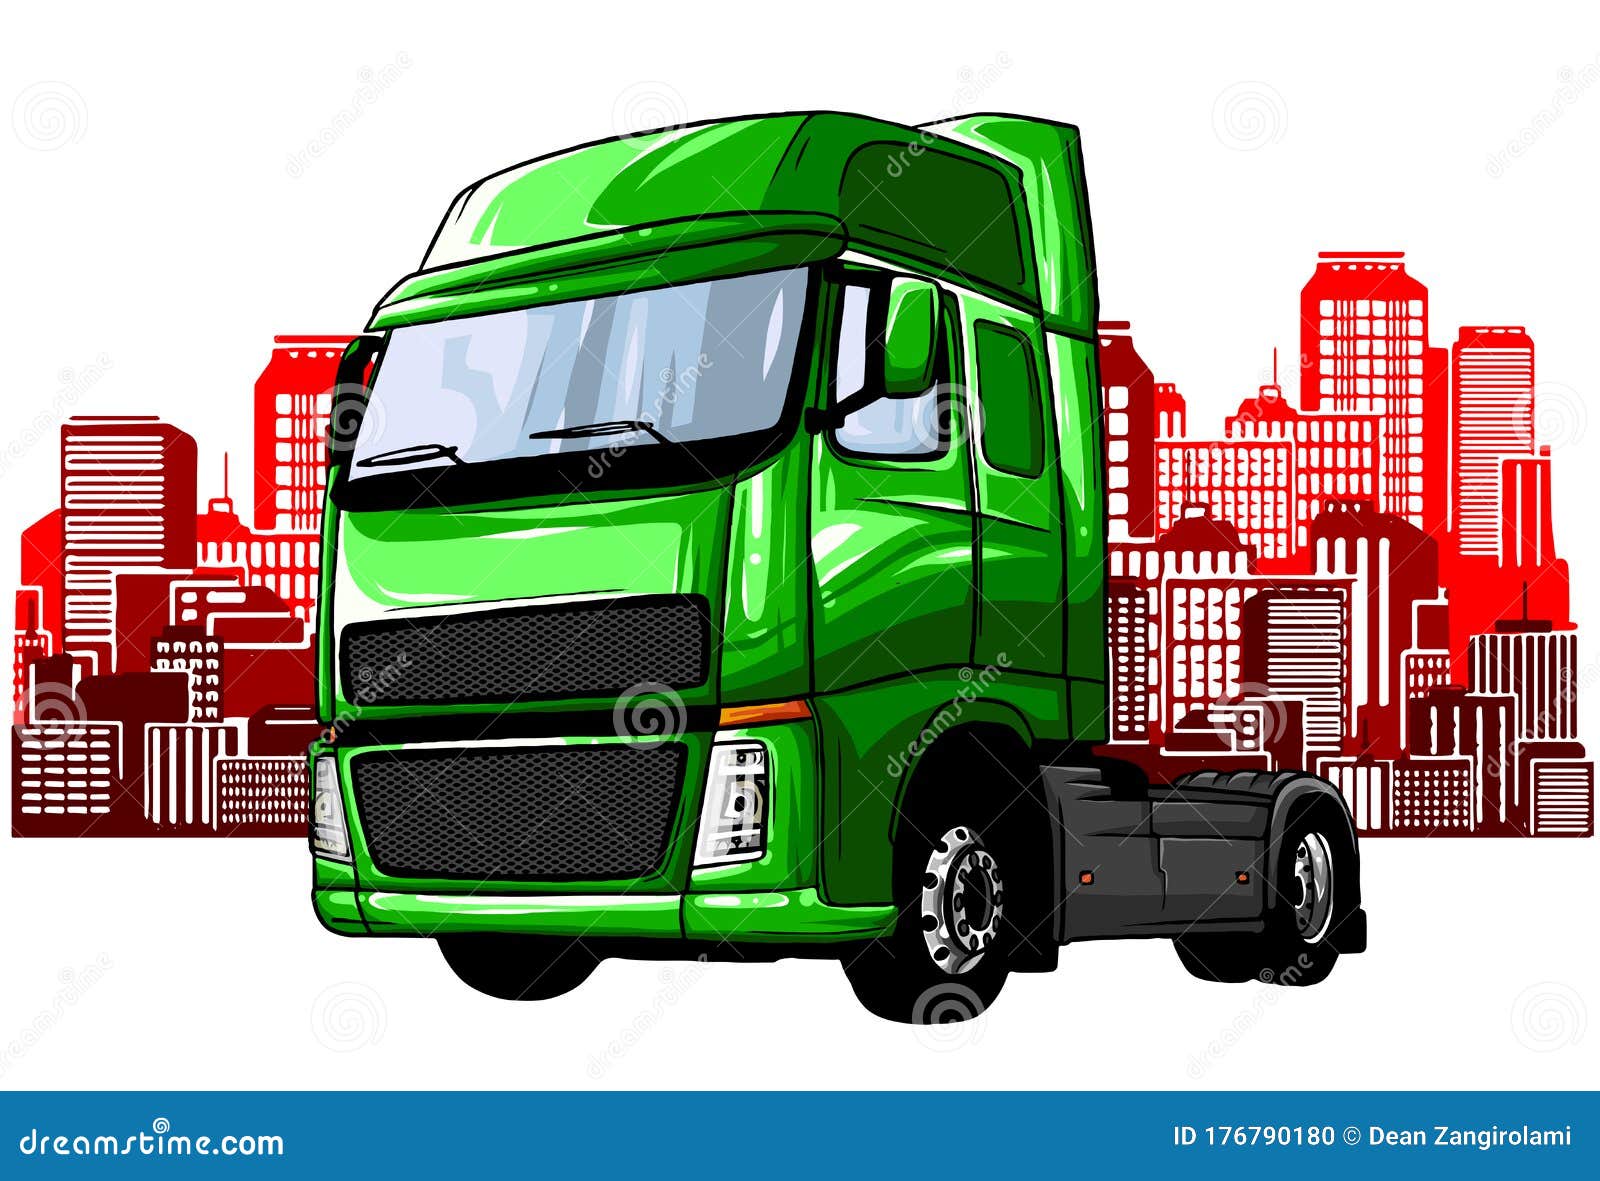 Jogo dos caminhões ilustração do vetor. Ilustração de estrada - 41278400